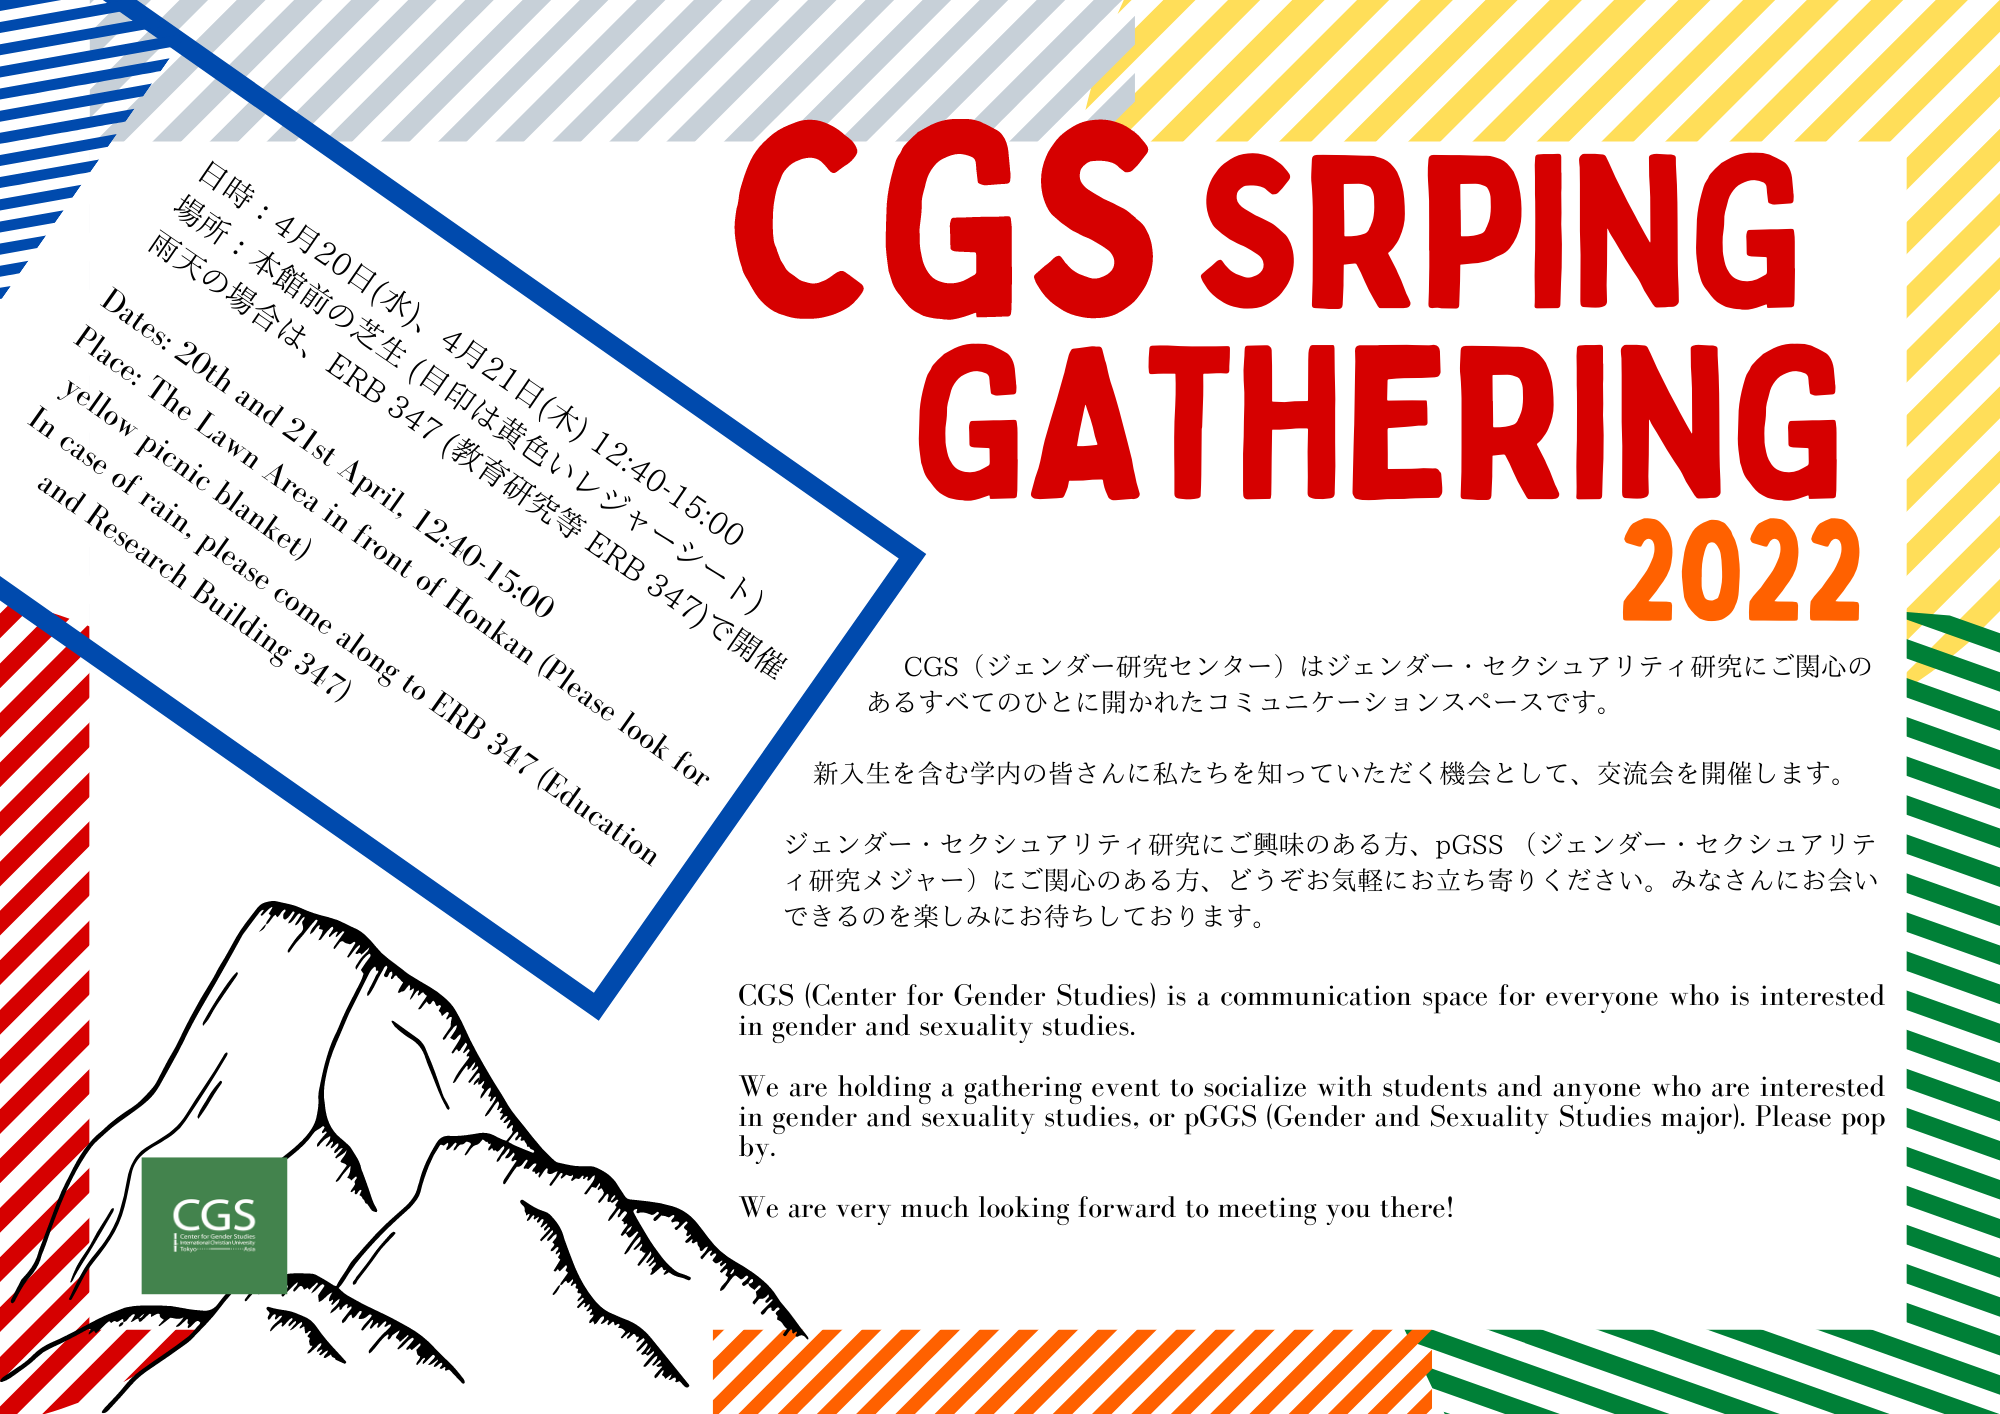 CGS SPRING GATHERING(0411).png